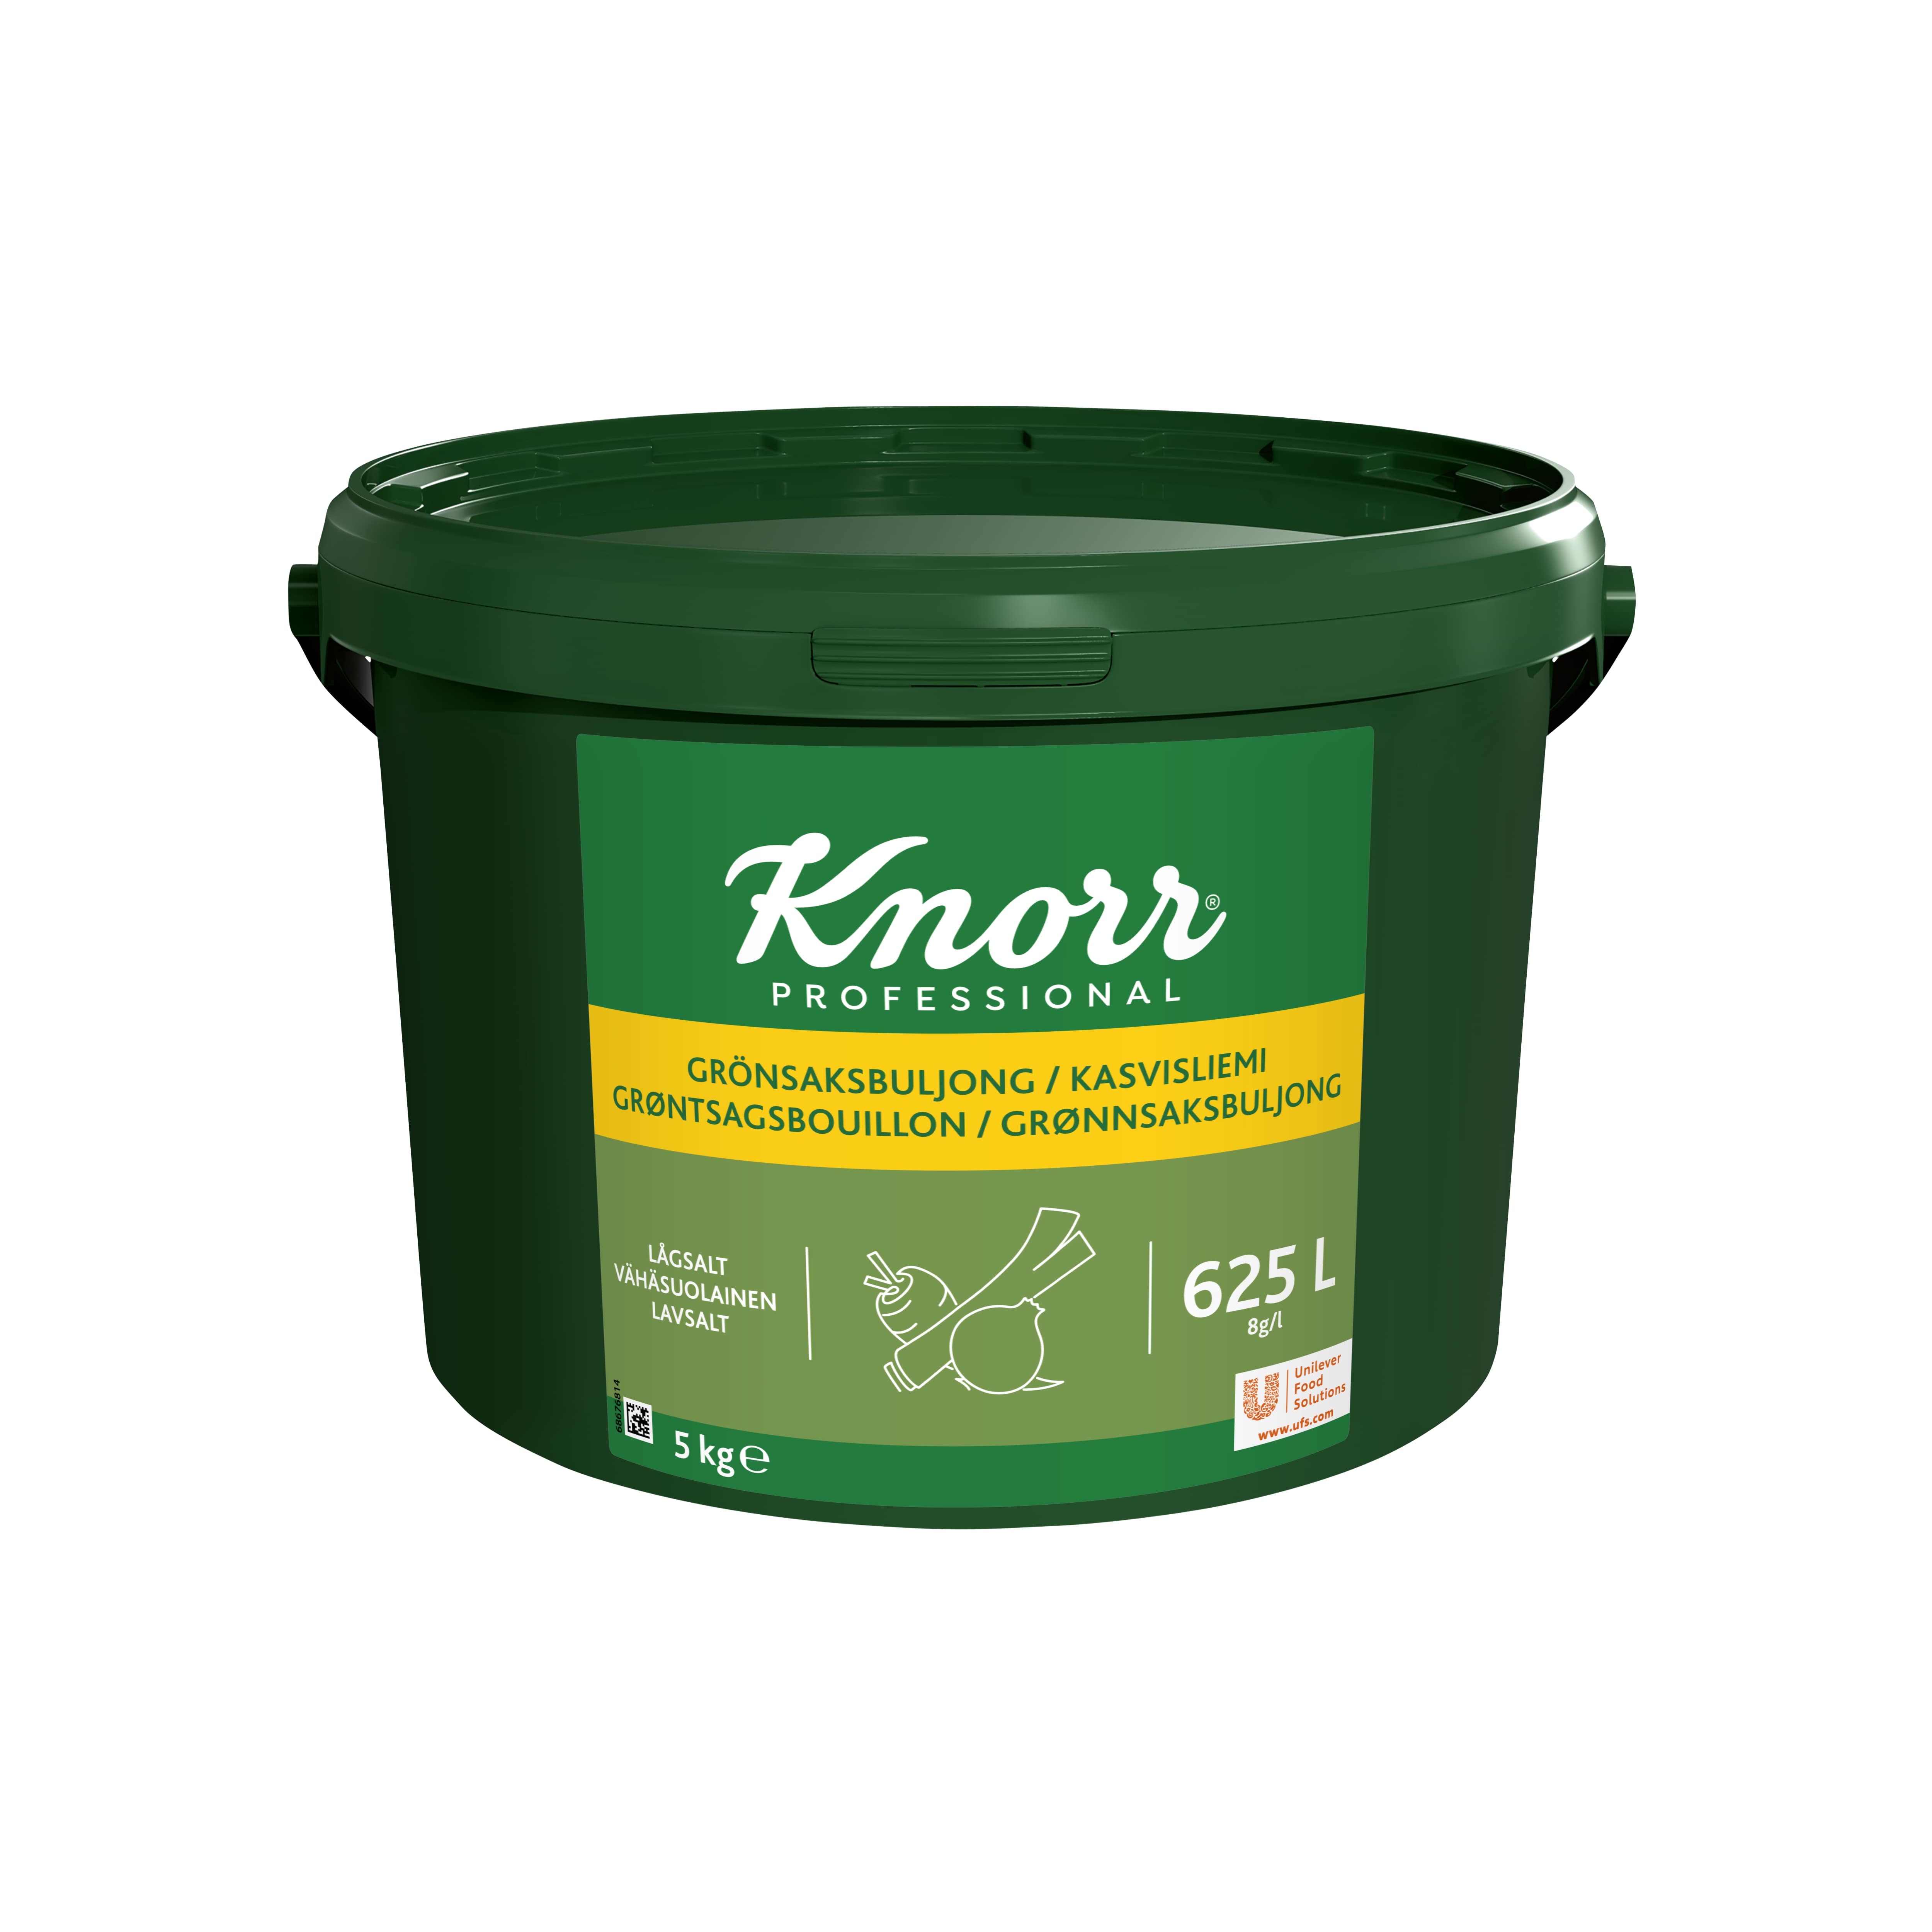 Knorr Kasvisliemi vähäsuolainen 5 kg / 625 L - 